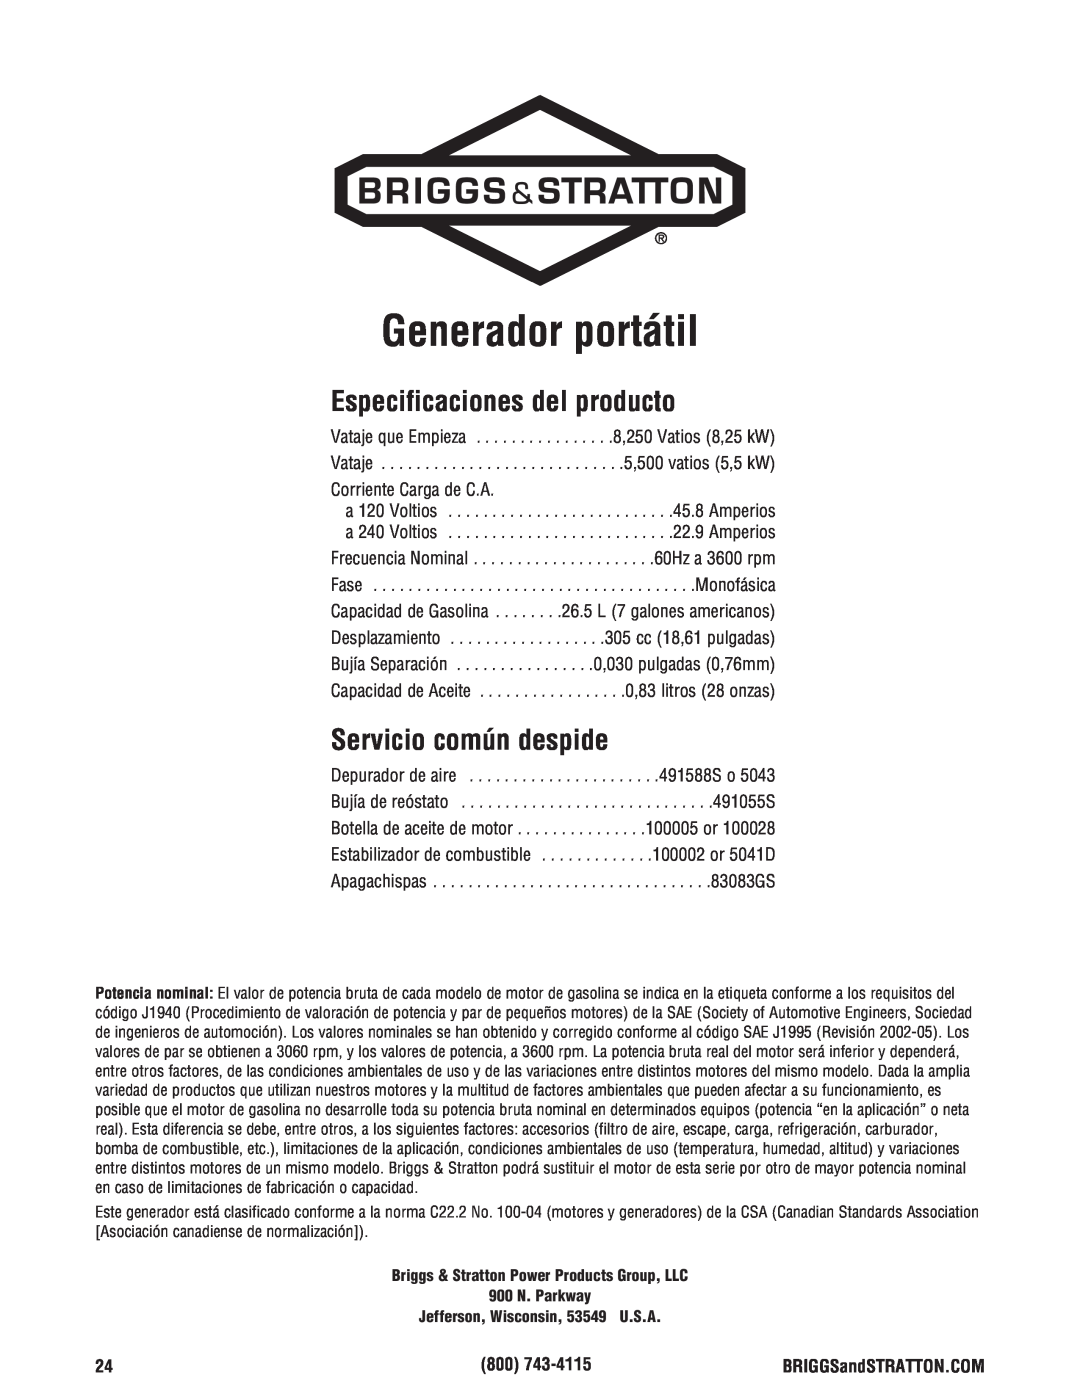 Briggs & Stratton Portable Generator manual Generador portátil, Especificaciones del producto, Servicio común despide 